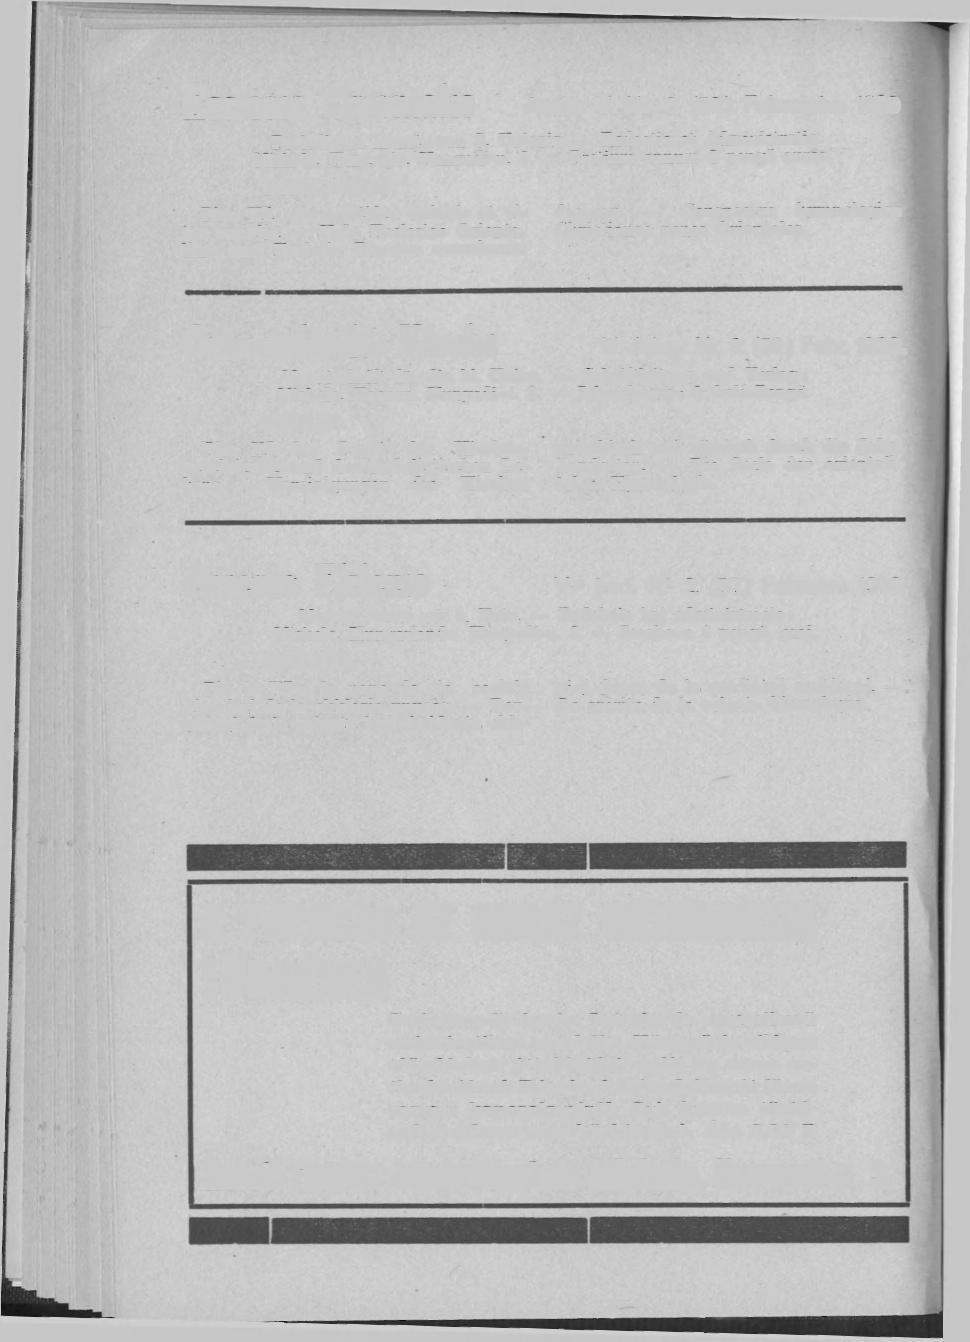 Ecclesia Orientális Annus V. Nr. 2. (52.) Februarys 1939 Periodicum menstruum S. ünionis. Redactio et Admiuistratio Miskolc, Hungaria. Hunyadi-u. 3. Pretium annum 8 pengő aurea. SUMMAR1UM. Pius XI.